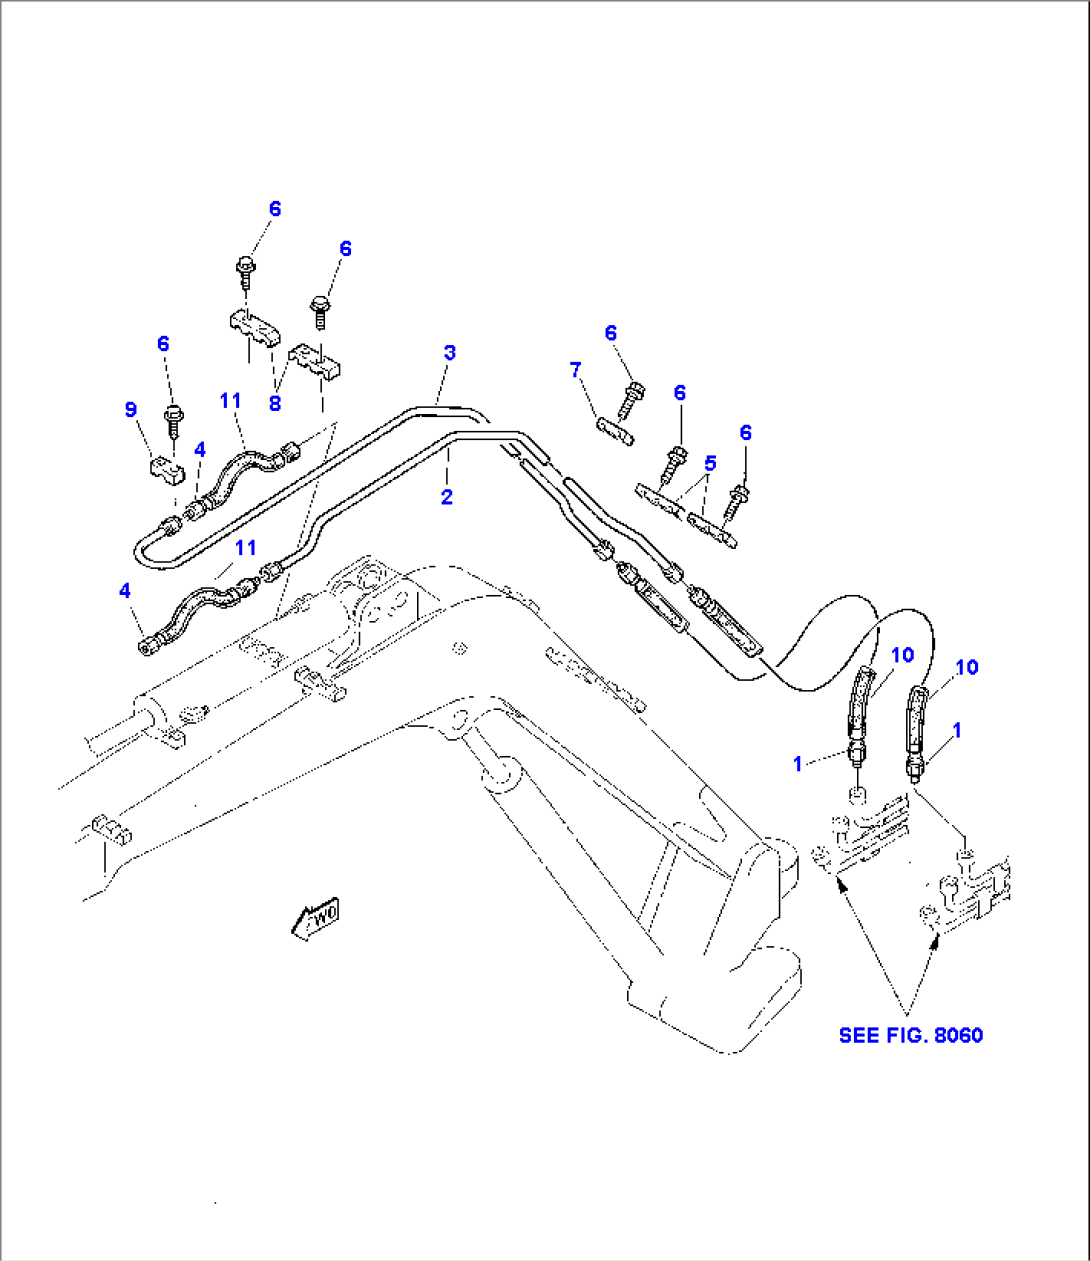 HYDRAULIC PIPING (ARM CYLINDER LINE)